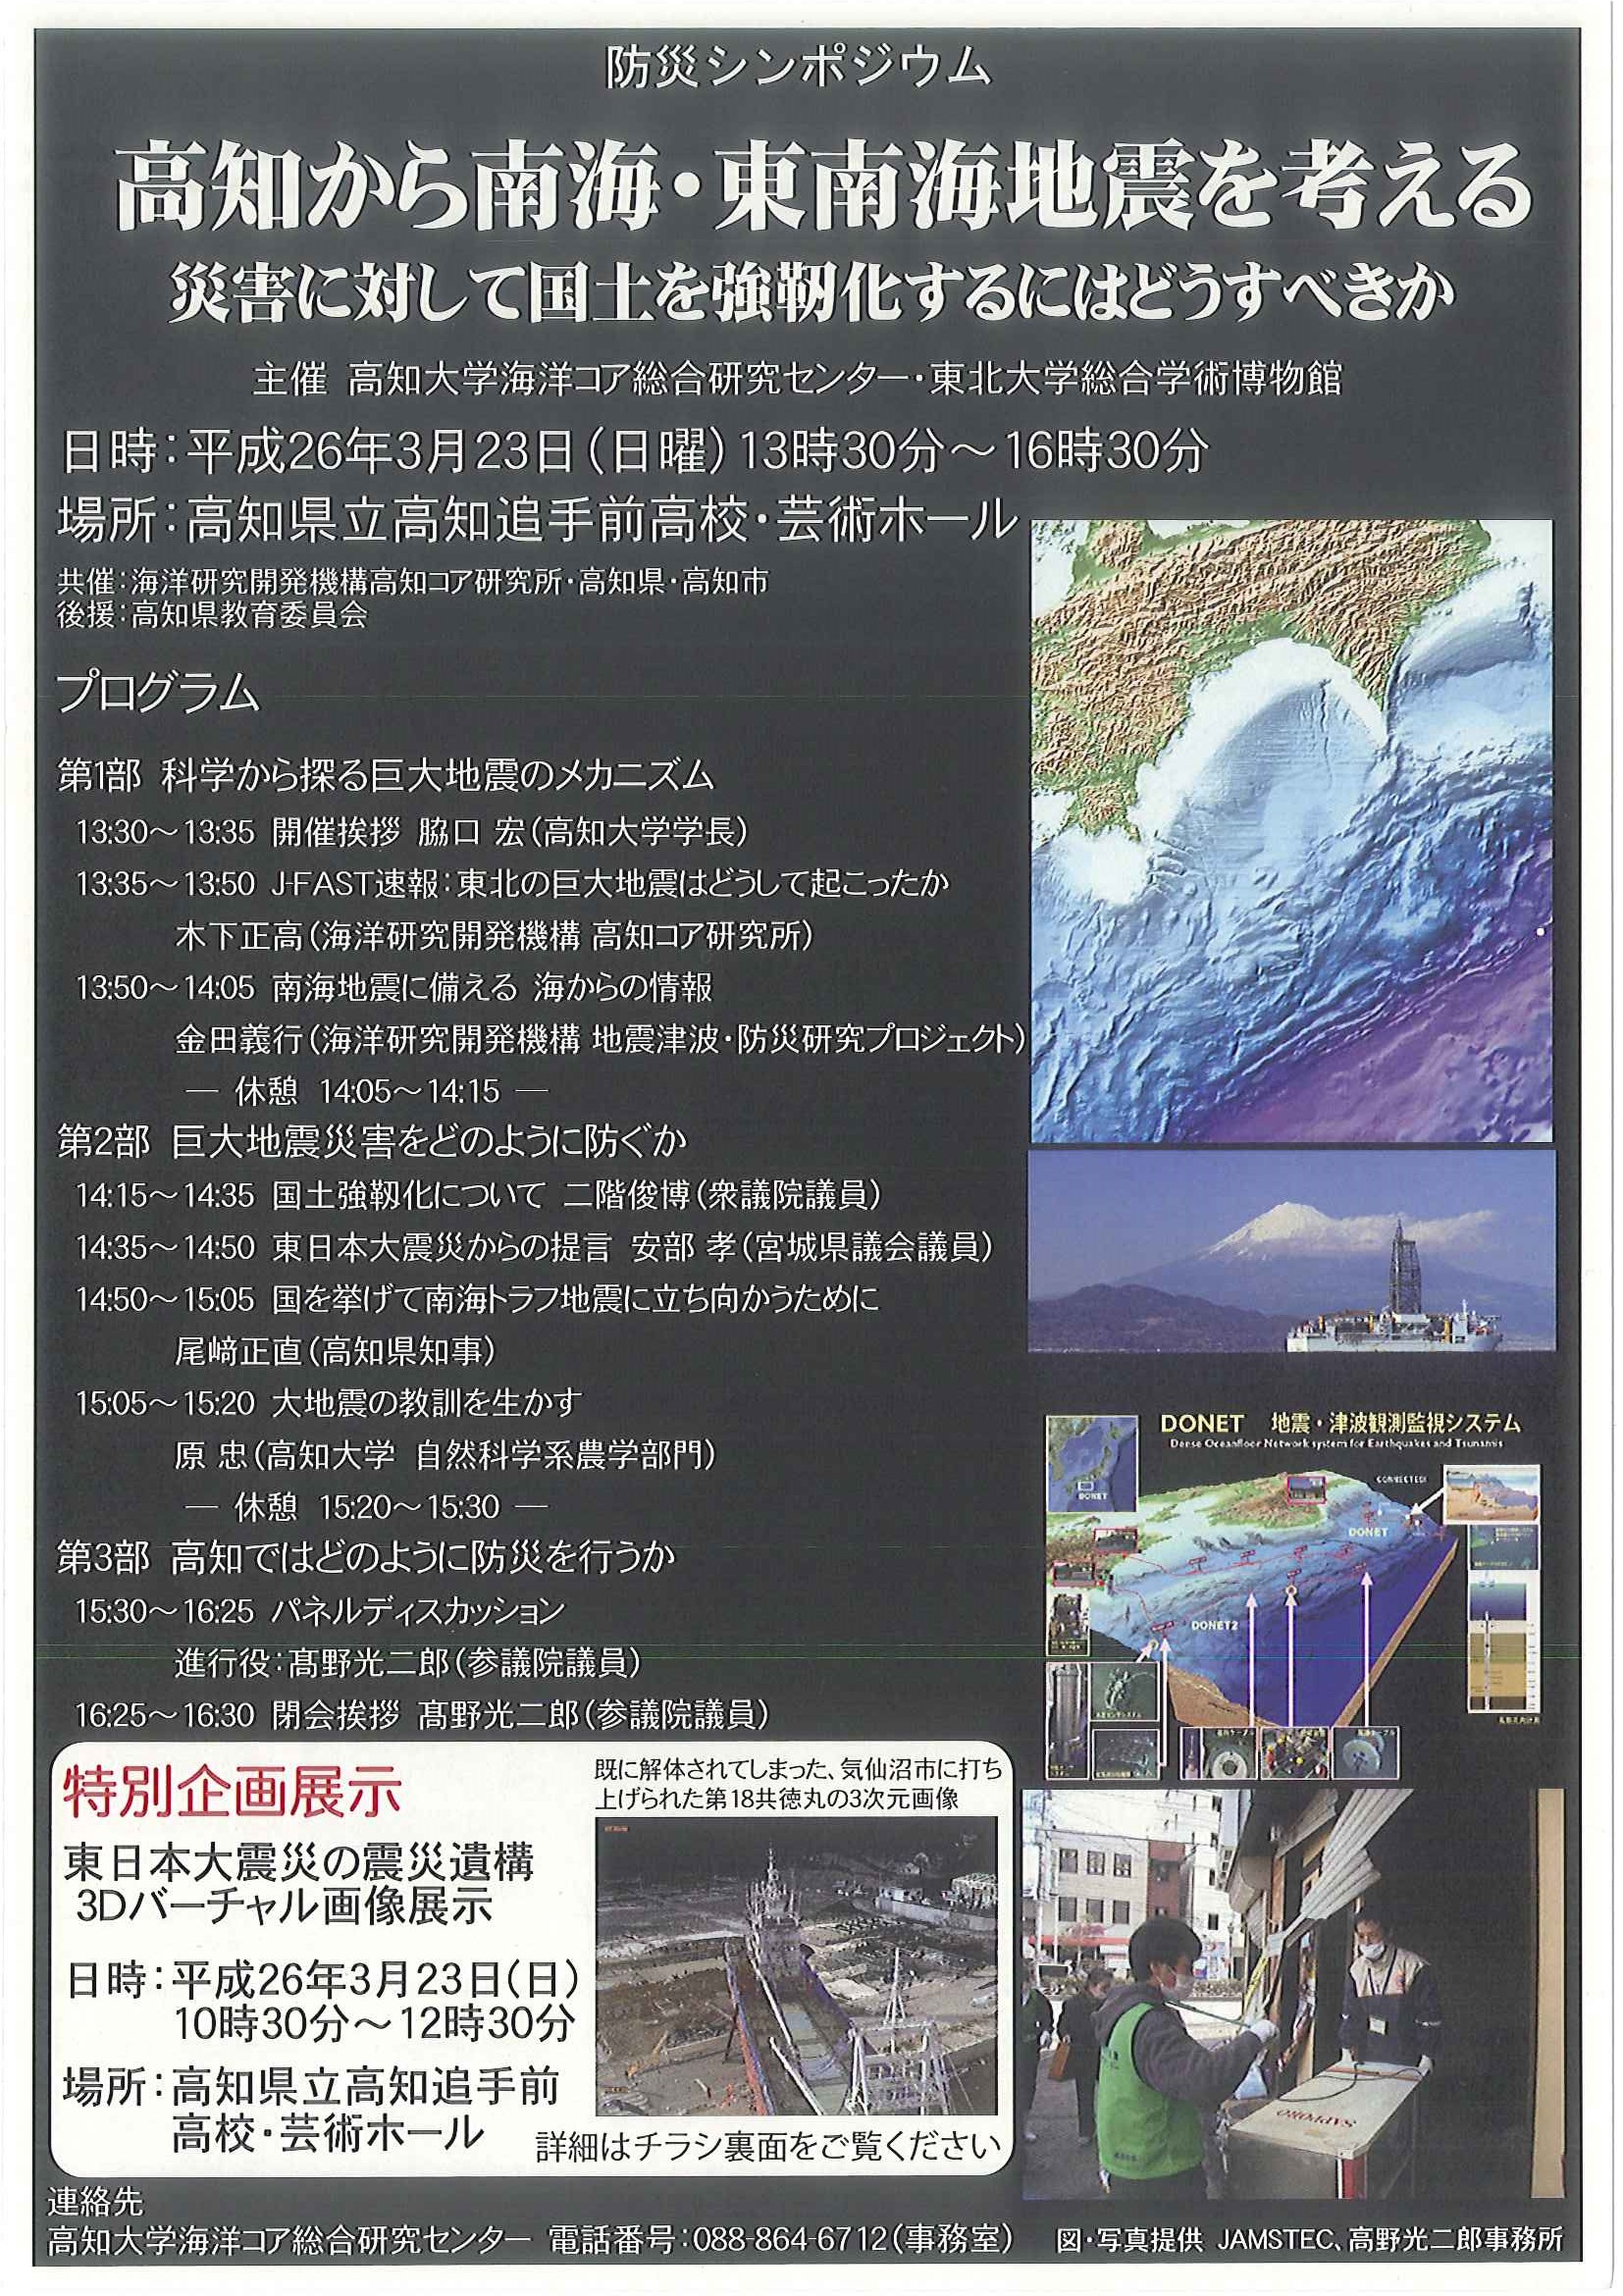 防災シンポジウム「高知から南海・東南海地震を考える」